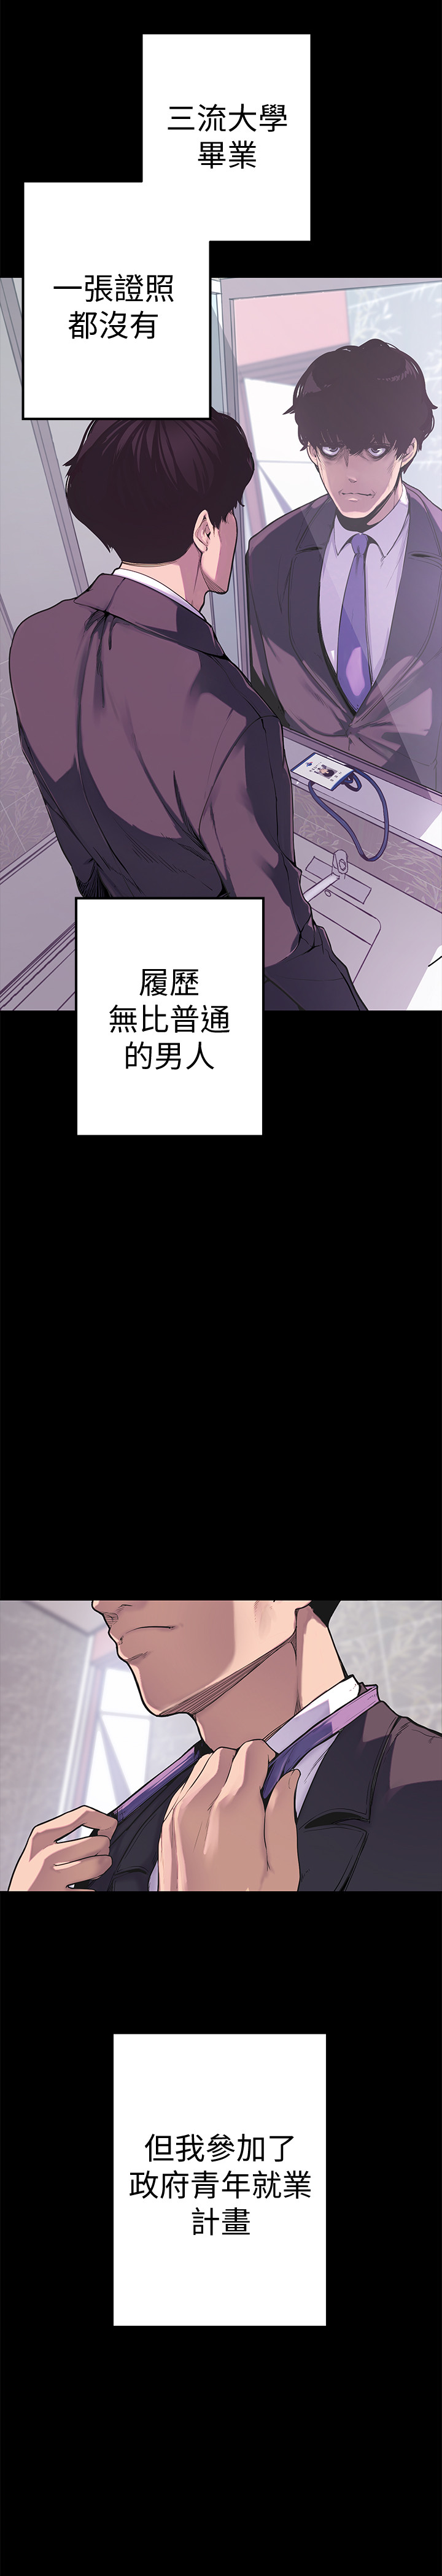 [尹坤志&高孫志]美丽新世界 EP.1(正體中文)高畫質版本 [尹坤志&高孫志]美麗新世界 第1話 女廁的針孔攝影機 2019.04.27高畫質版本